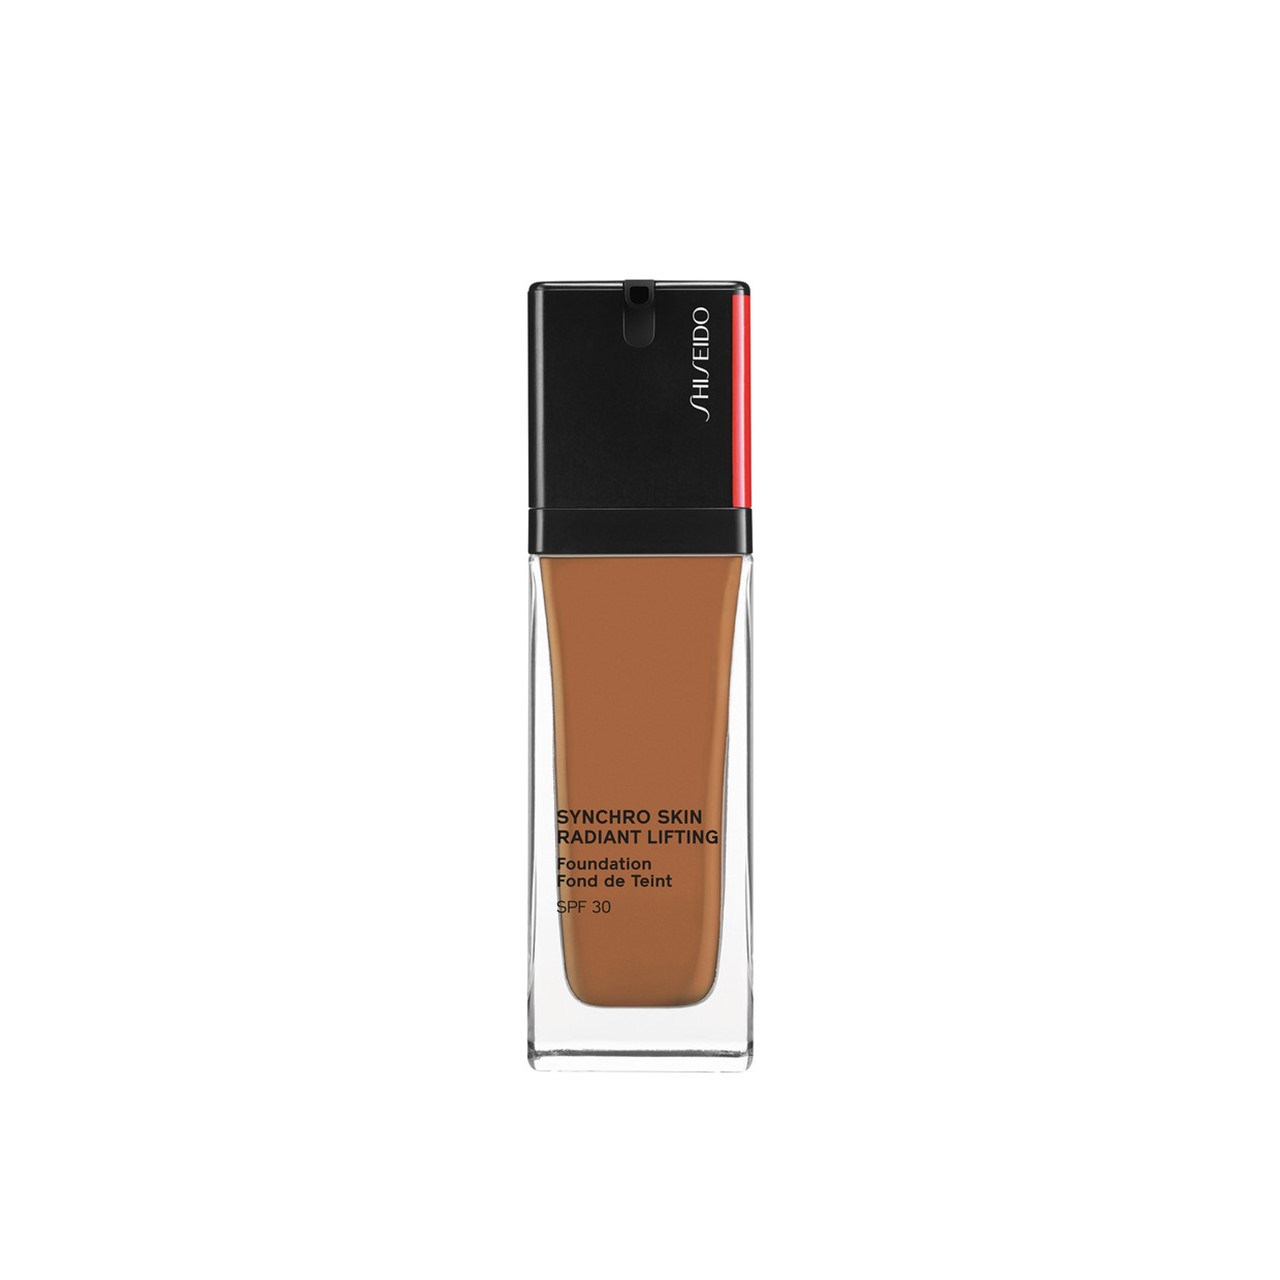 Shiseido Synchro Skin Radiant Lifting Foundation SPF30 460 Topaz 30ml (1.01fl oz)